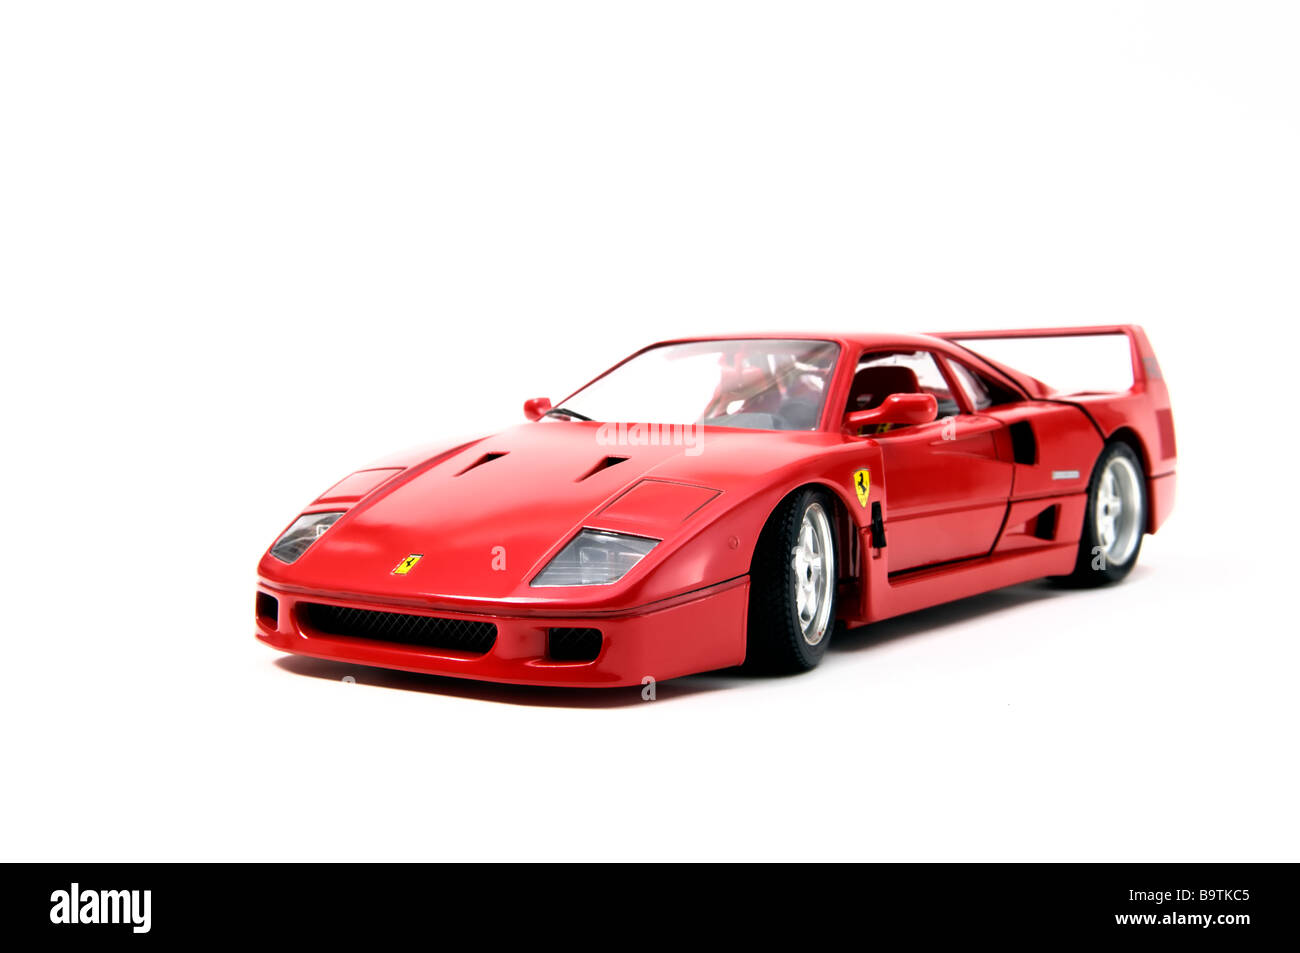 Réplique miniature d'un rouge Ferrari F40 modèle voiture par voiture modèle fabricant Bburago sur fond blanc Banque D'Images